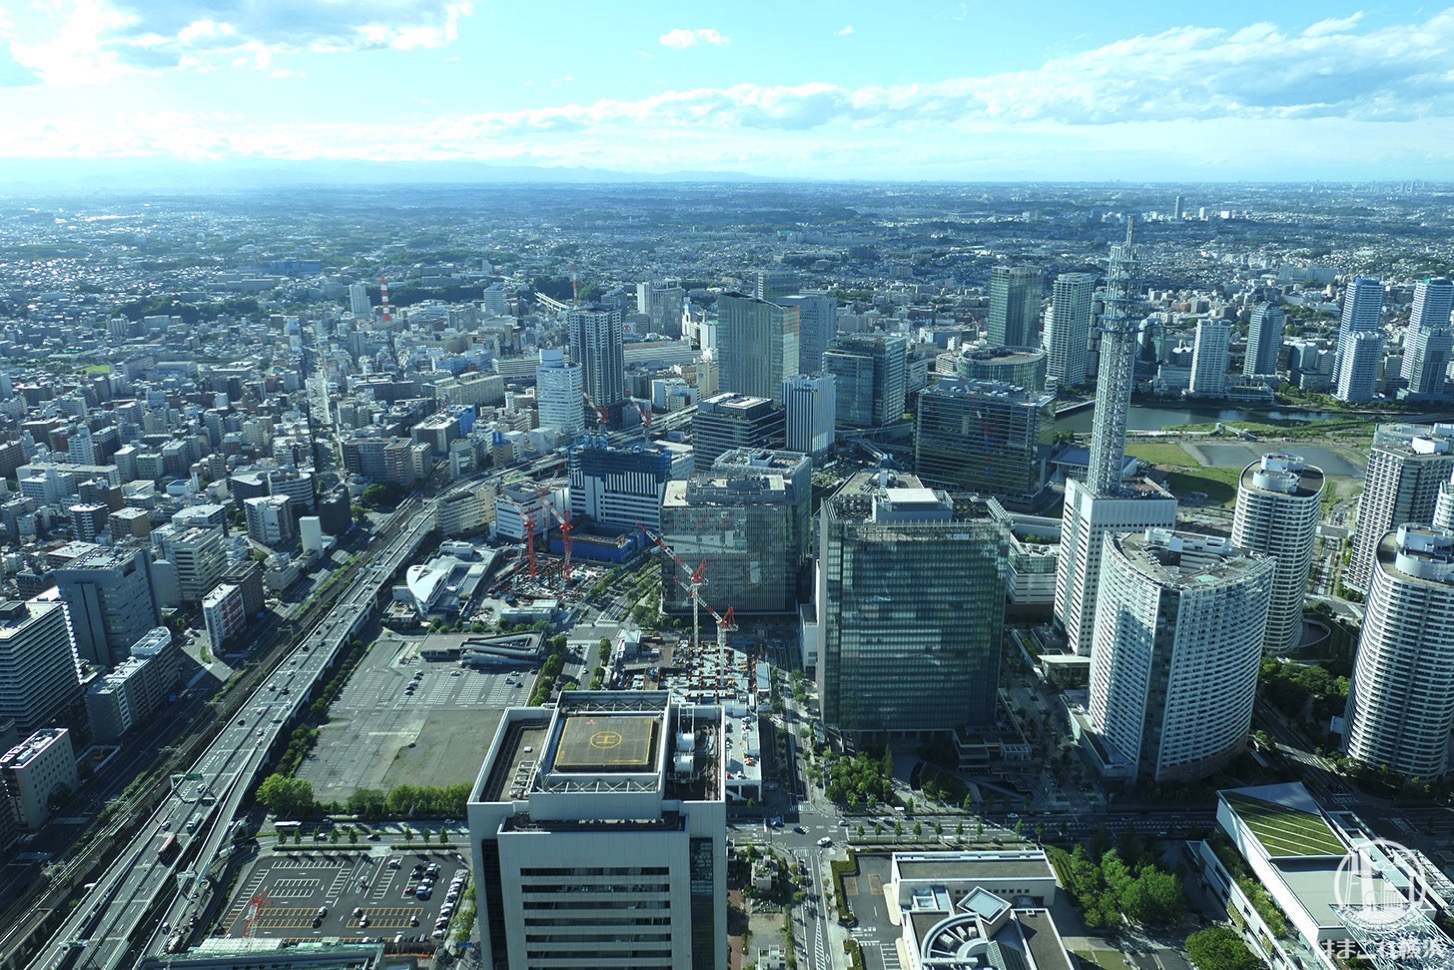 展望フロア「スカイガーデン」から見た横浜駅側